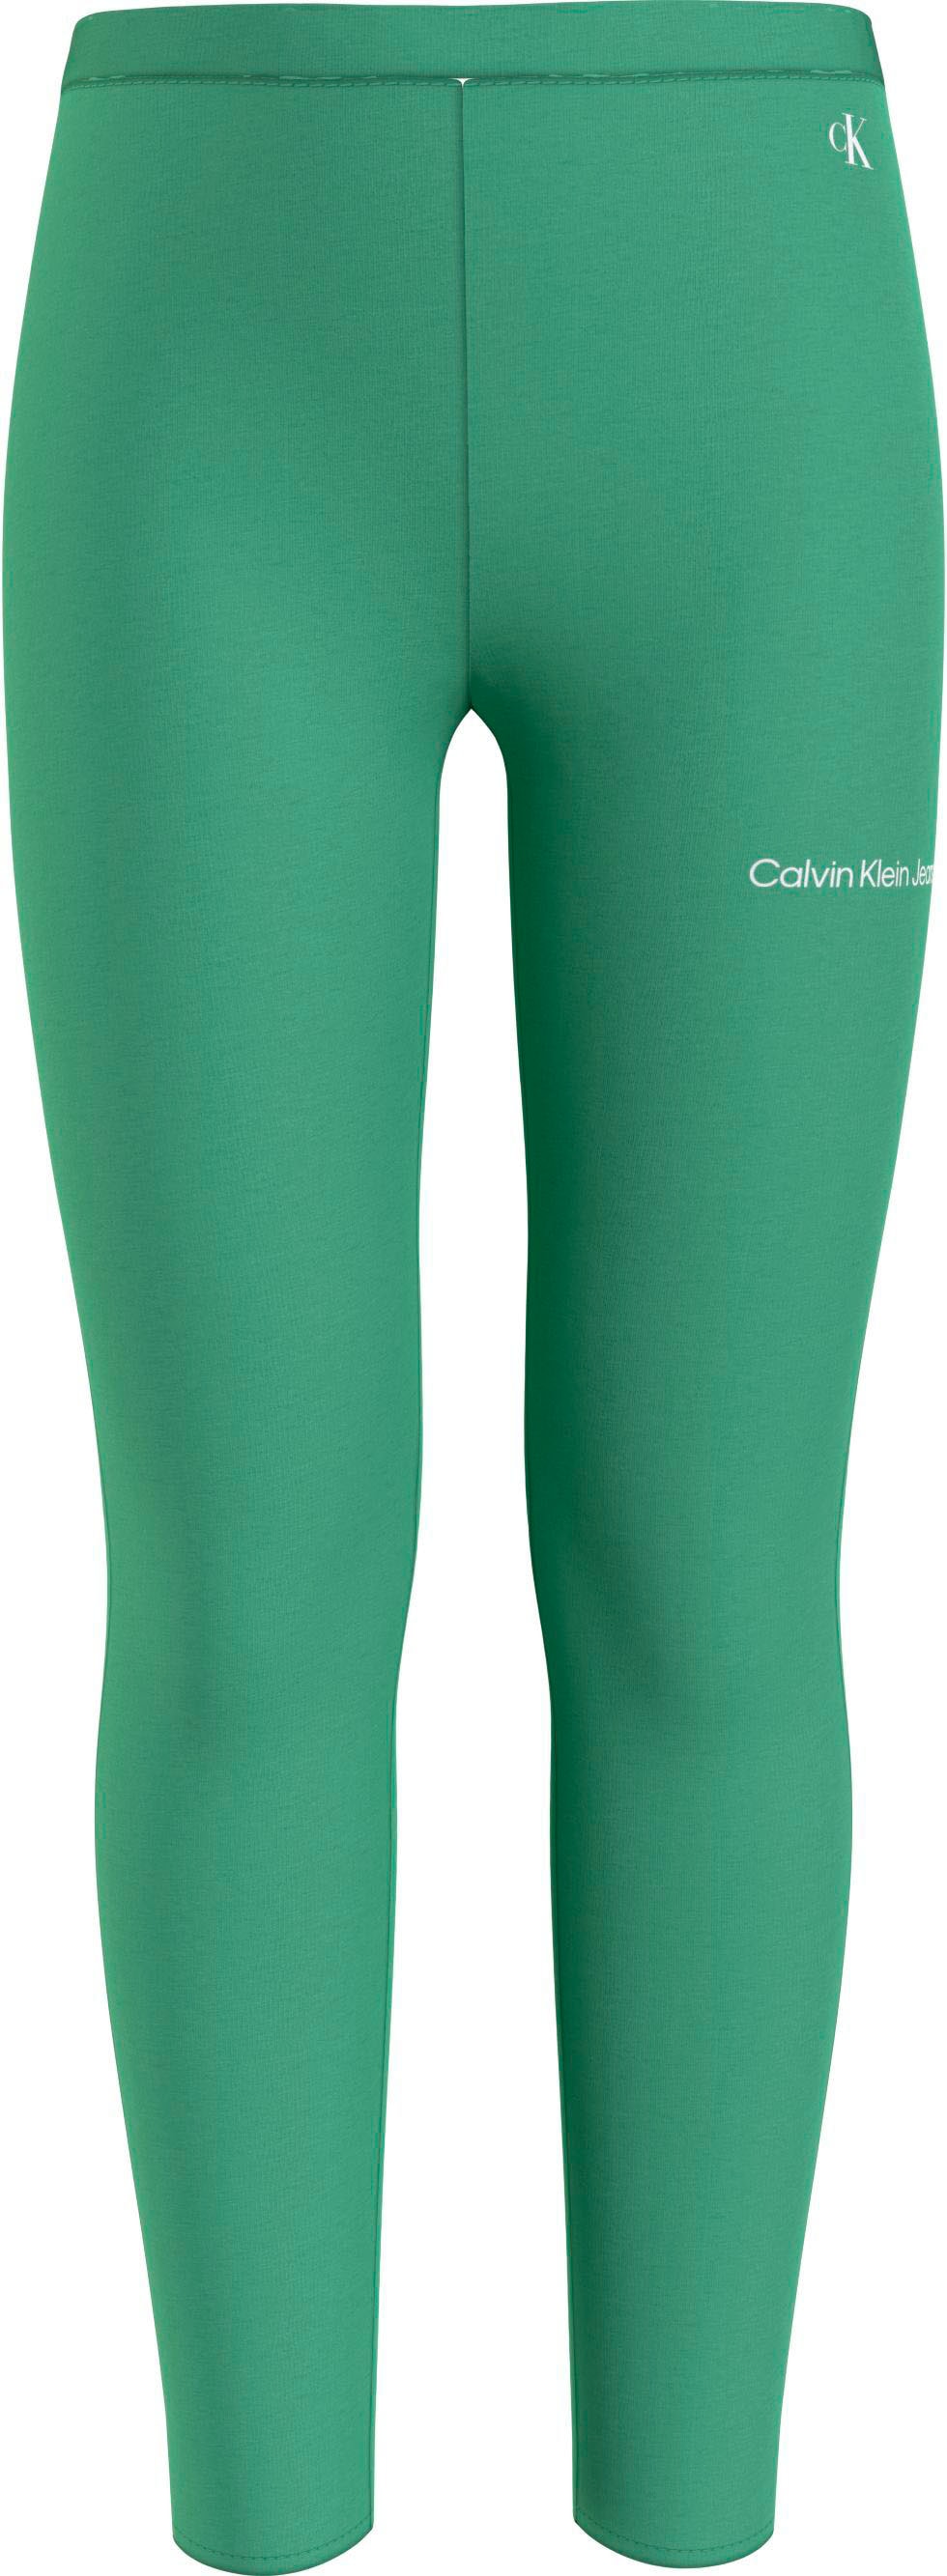 Calvin Klein Jeans Leggings, Kinder Kids Junior MiniMe,mit Calvin Klein  Logoschriftzug auf dem Bein online kaufen | BAUR